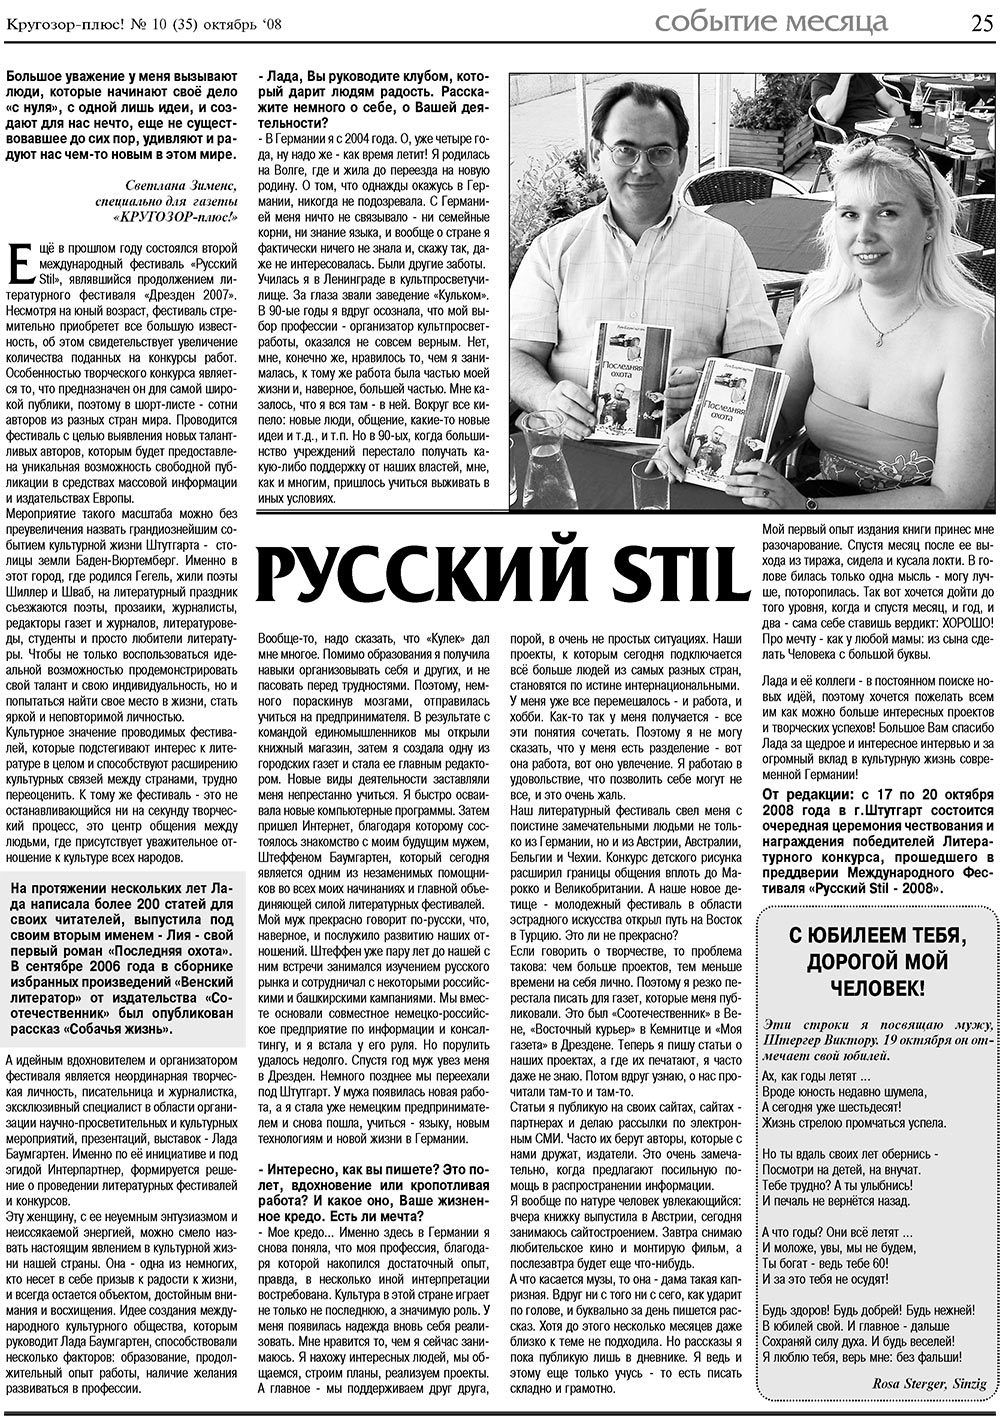 Кругозор плюс!, газета. 2008 №10 стр.25